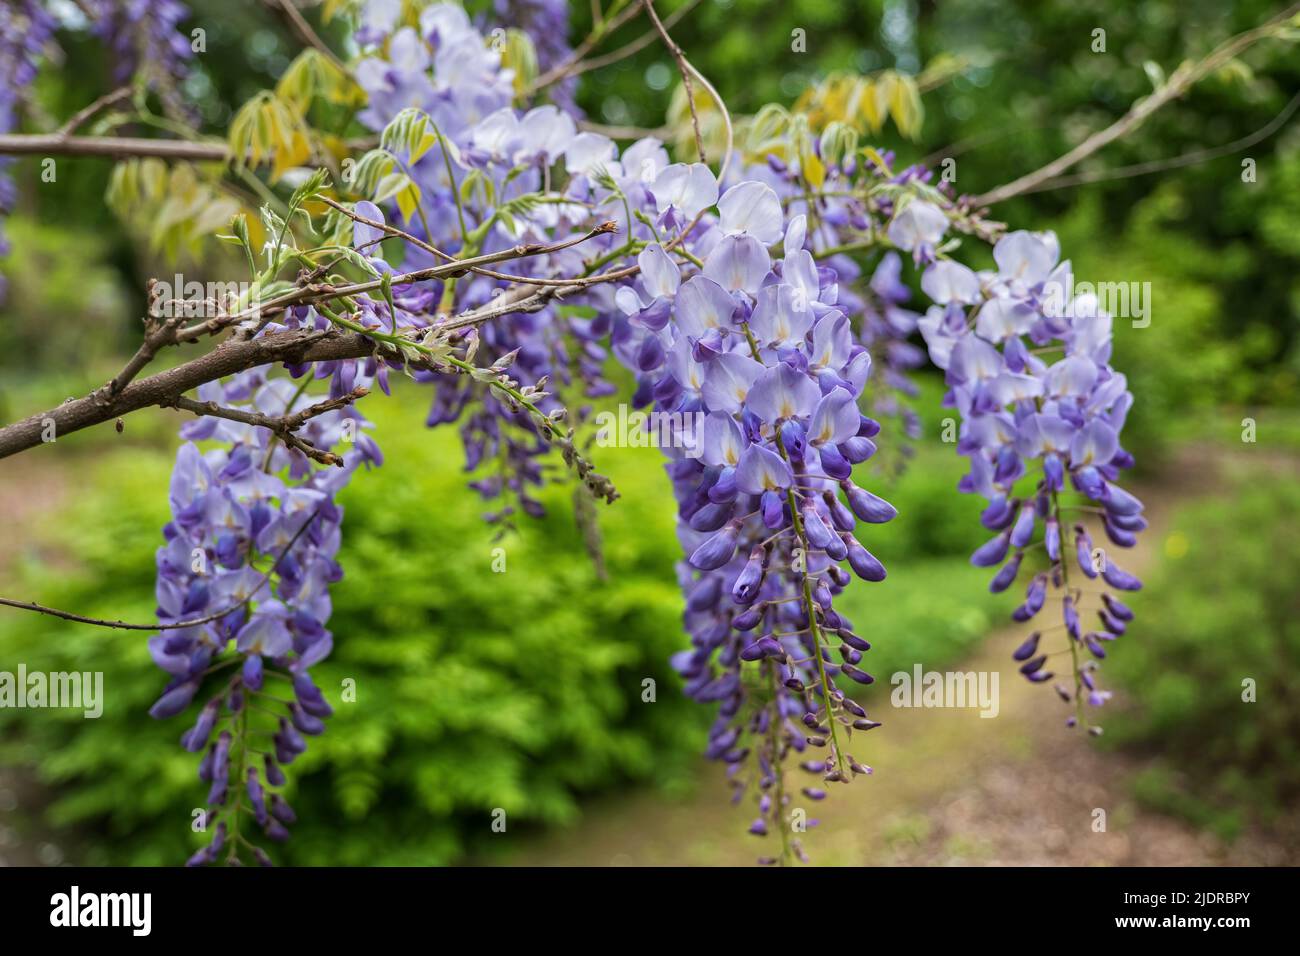 Wisteria sinensis Chinese wisteria lavande fleurs fleuries, plante dans la famille des Fabaceae (famille des pois), aire de répartition: Chine. Banque D'Images